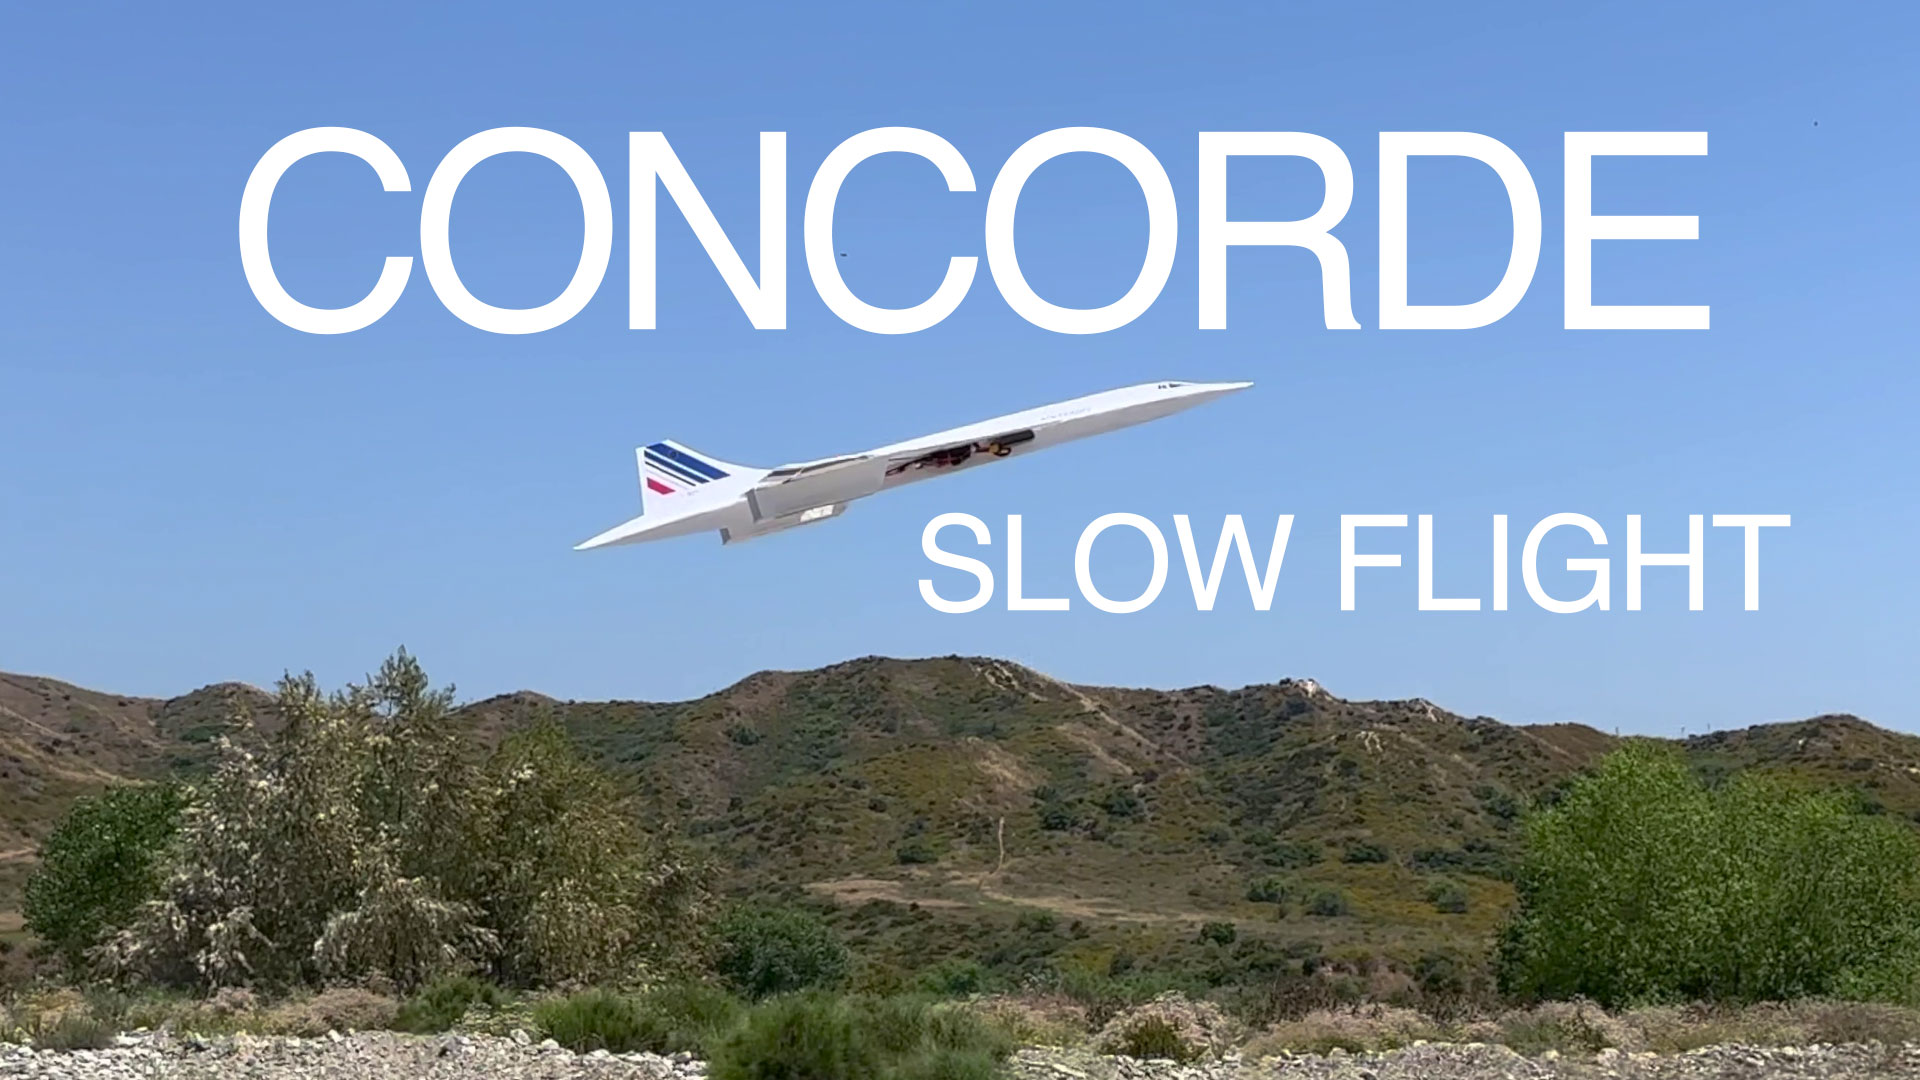 Concorde Slow Flights